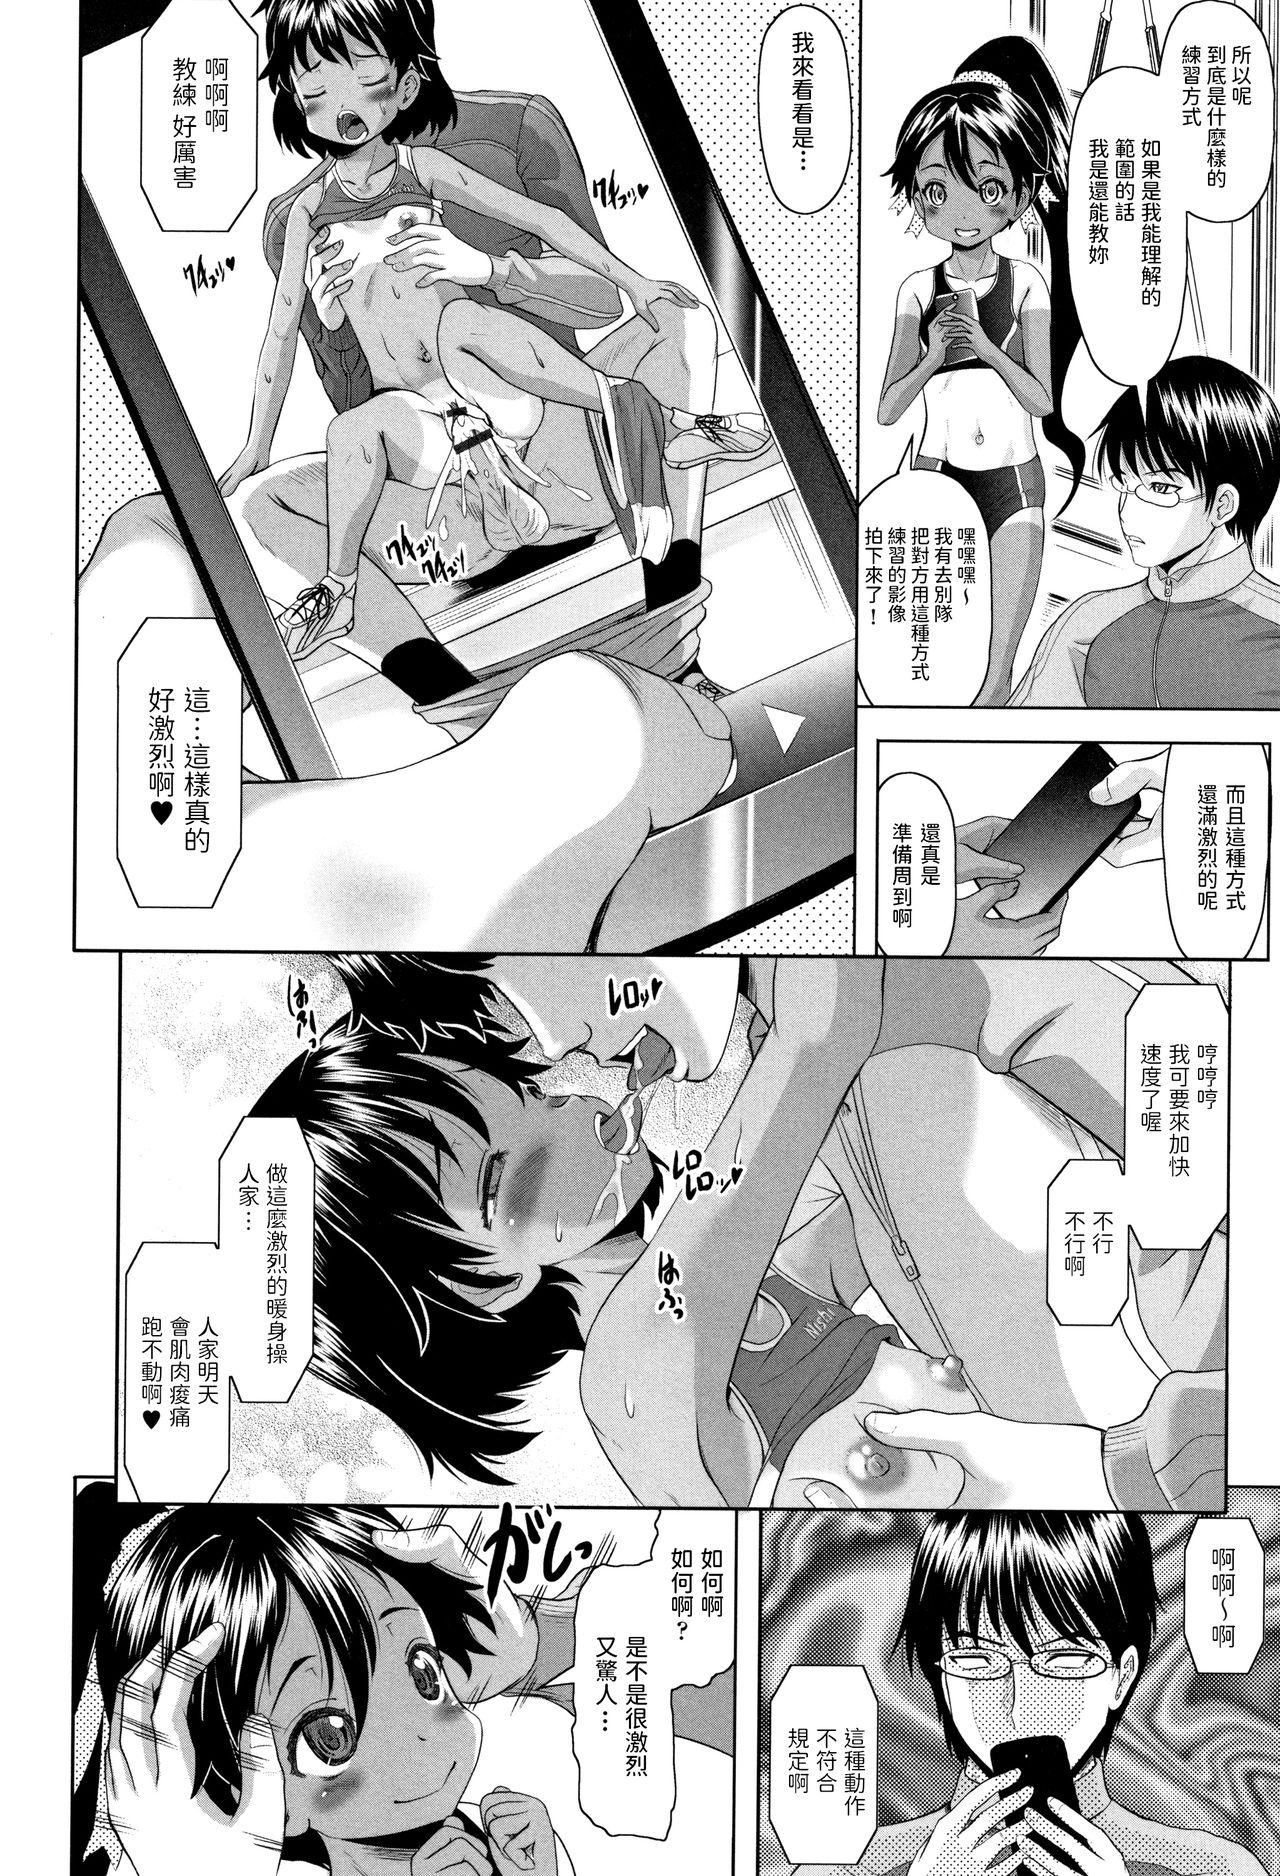 Teenage Sex Arima to Himitsu no Tokkun Shiyo! Spread - Page 4